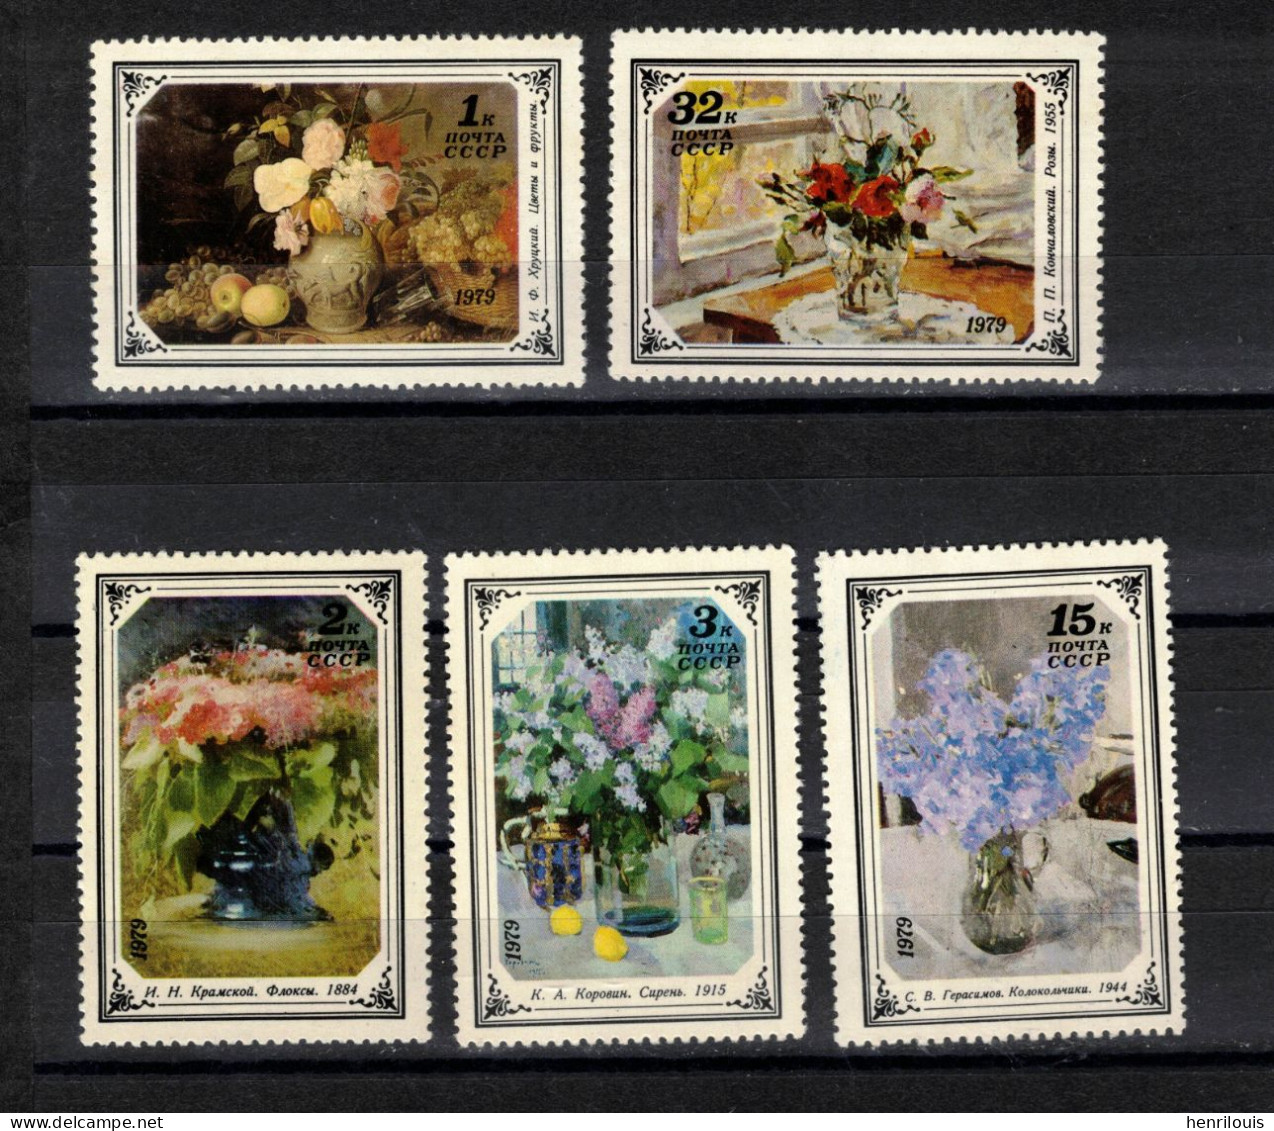 Lot de timbres neufs de Russie-URSS (ref 052 ) voir 11 scans et description